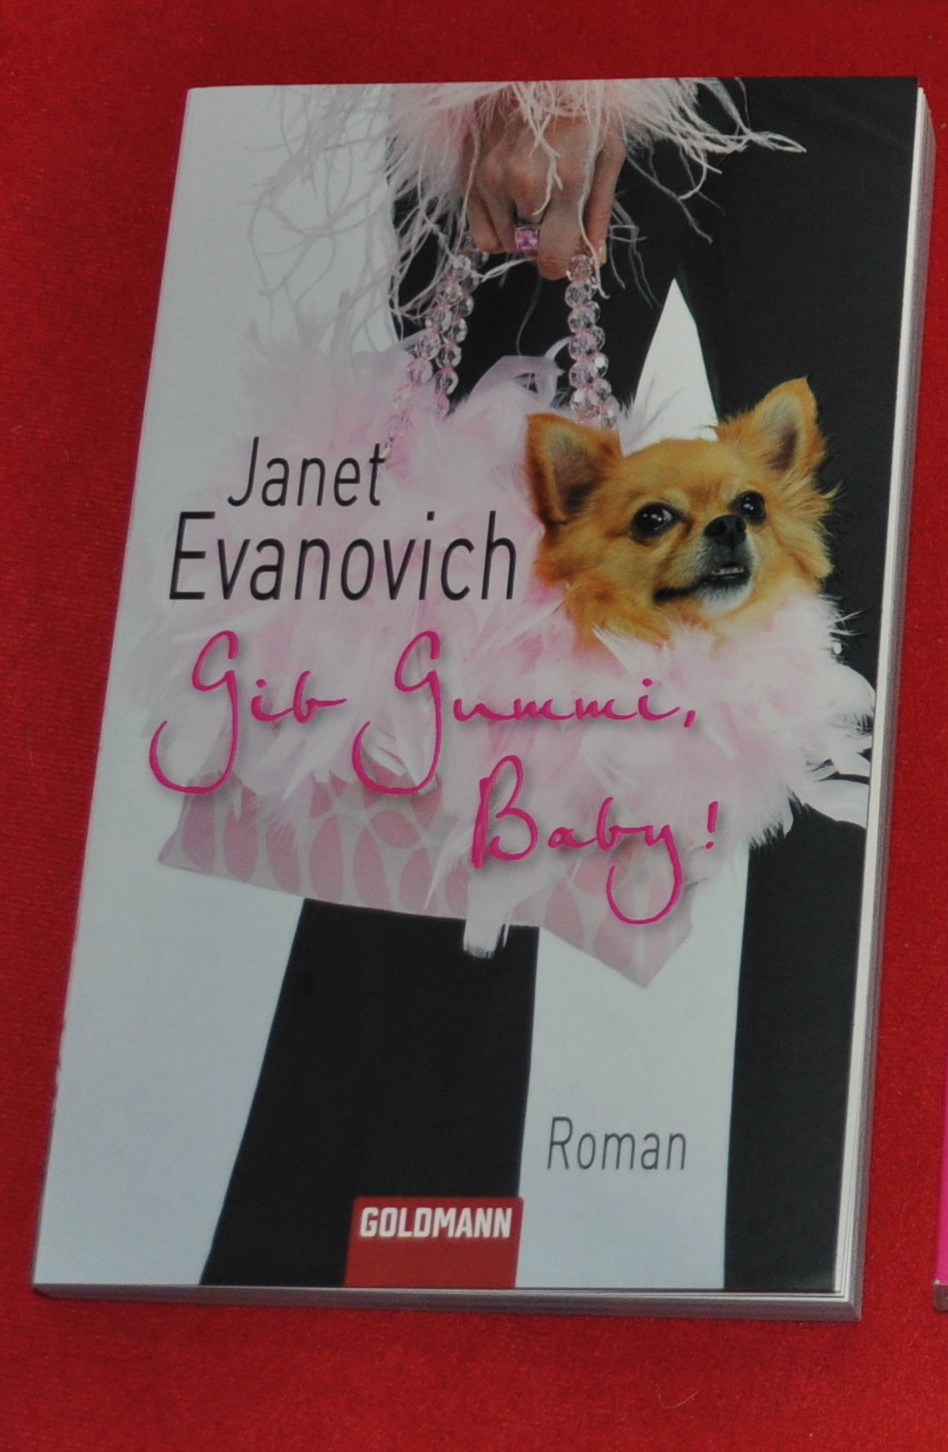 Janet Evanovich - Gib Gummi, Baby!